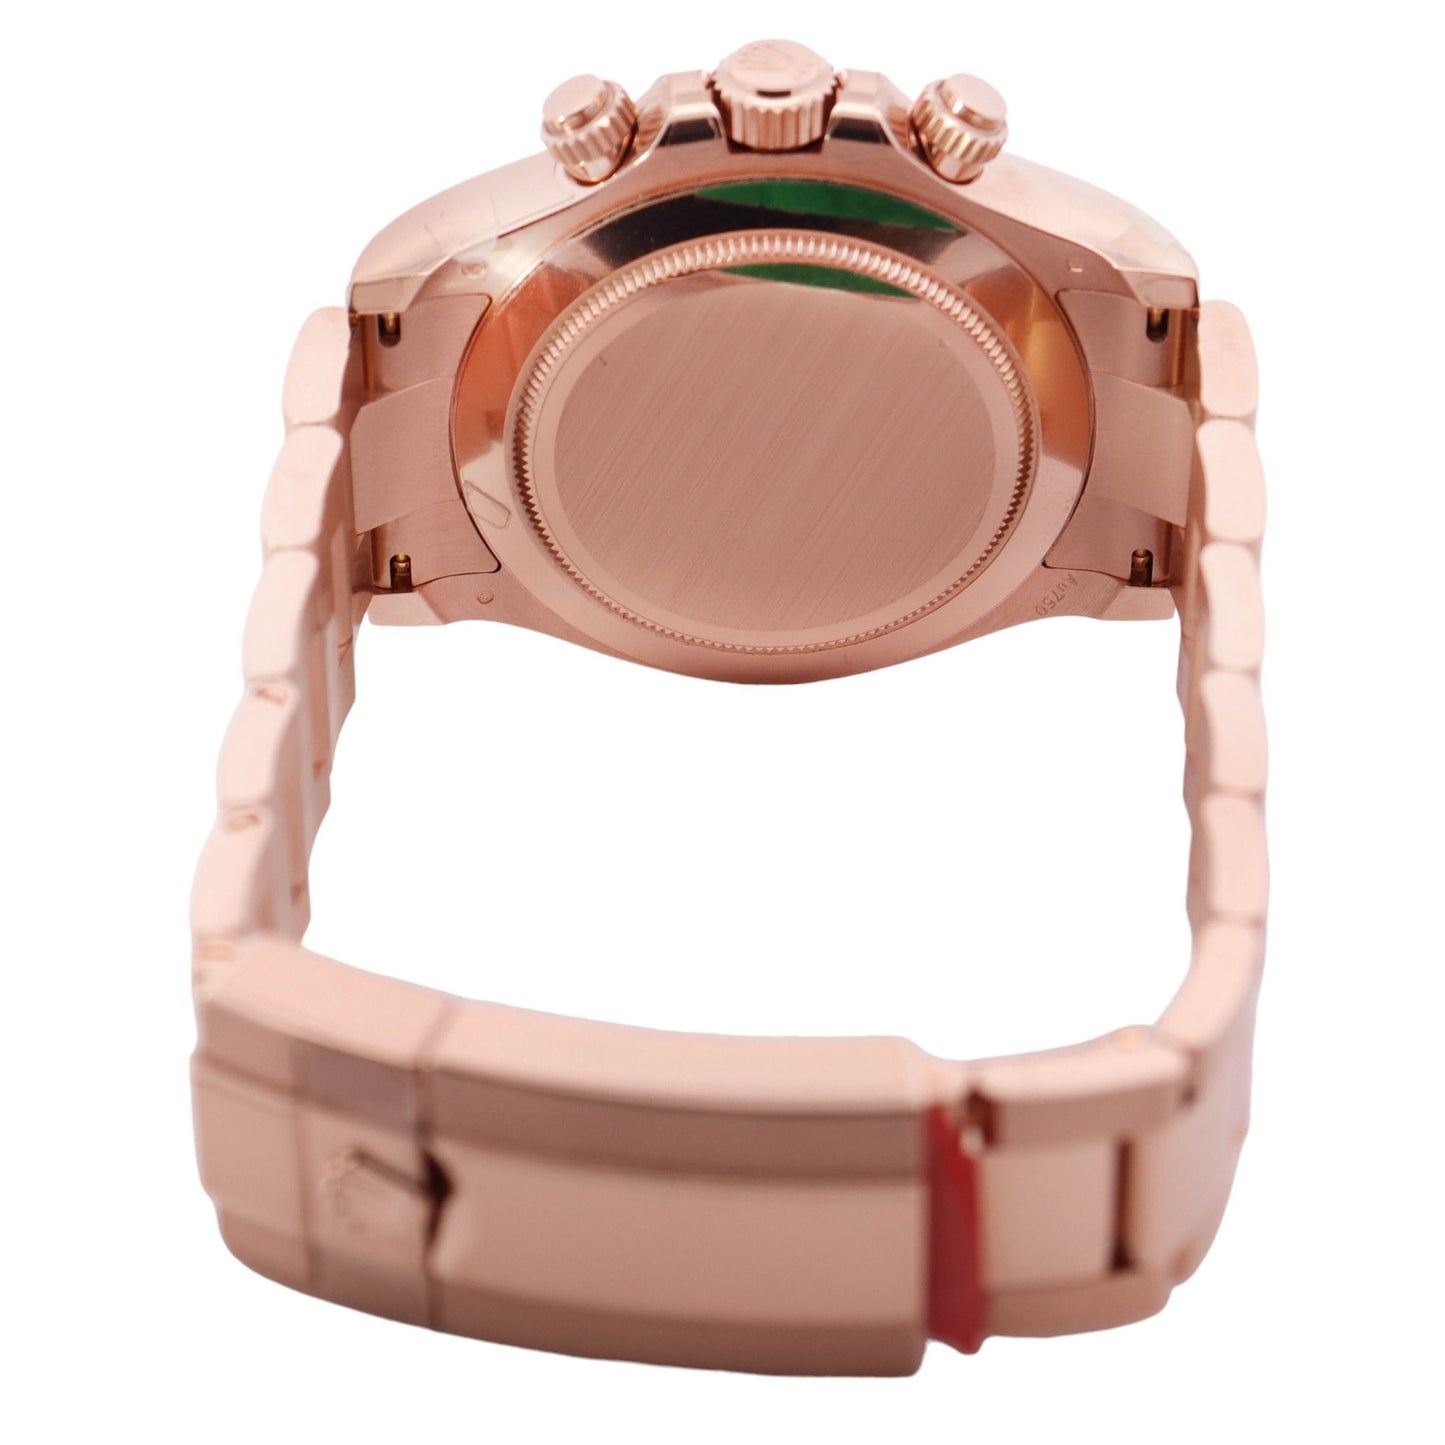 Rolex Daytona Rose Gold 40mm Black Diamond Dial Watch Reference# 116505 - Happy Jewelers Fine Jewelry Lifetime Warranty